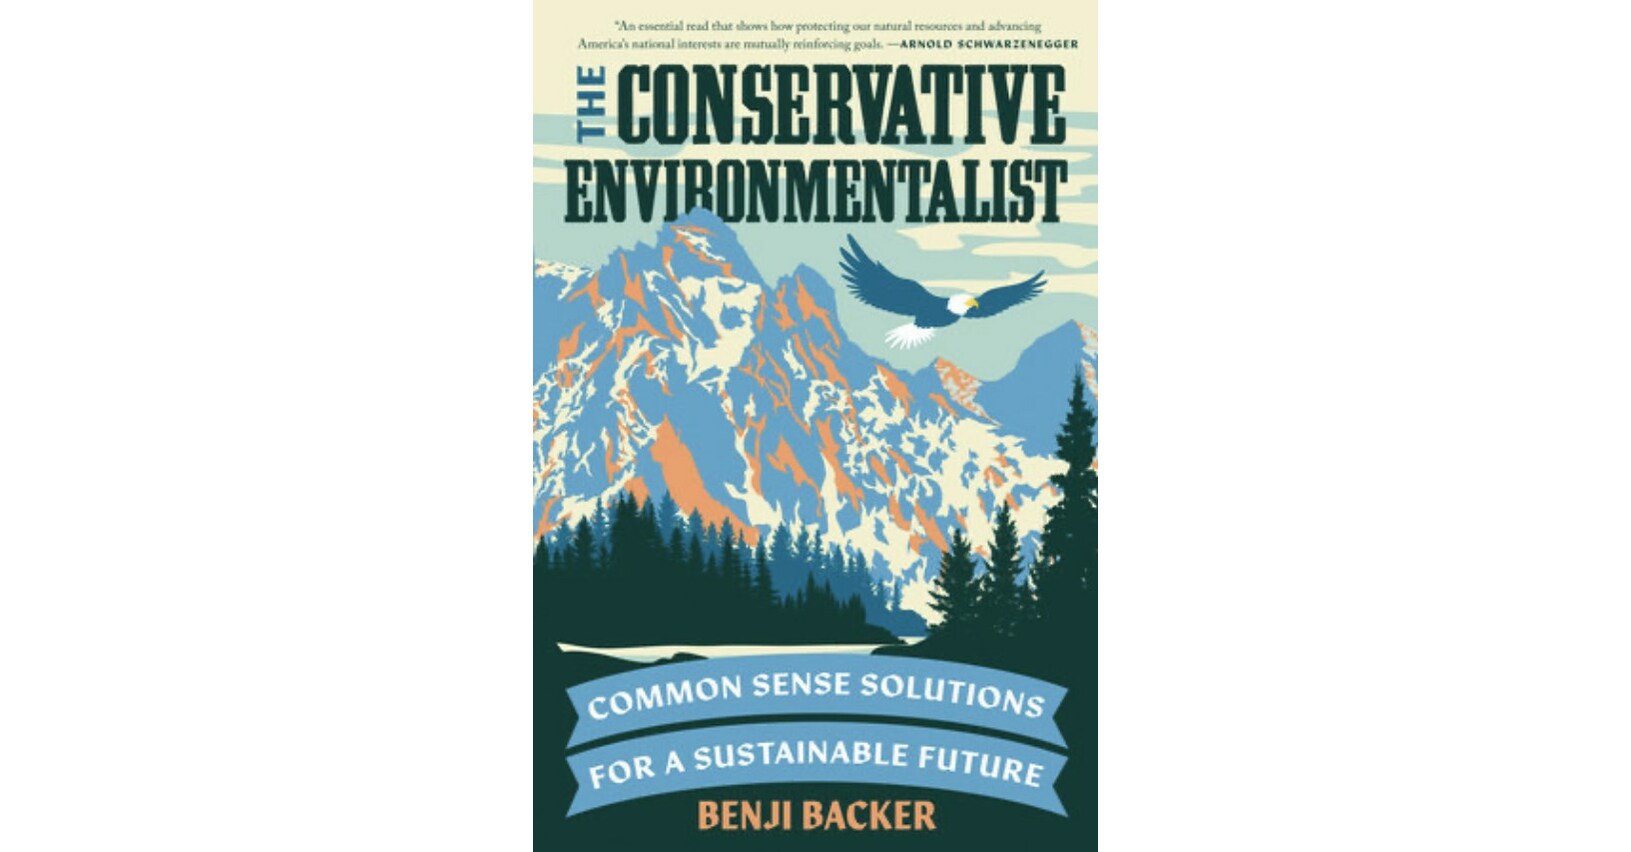 EarthX将在即将到来的会议大会上介绍《保守的环保主义者》的作者Benji Backer